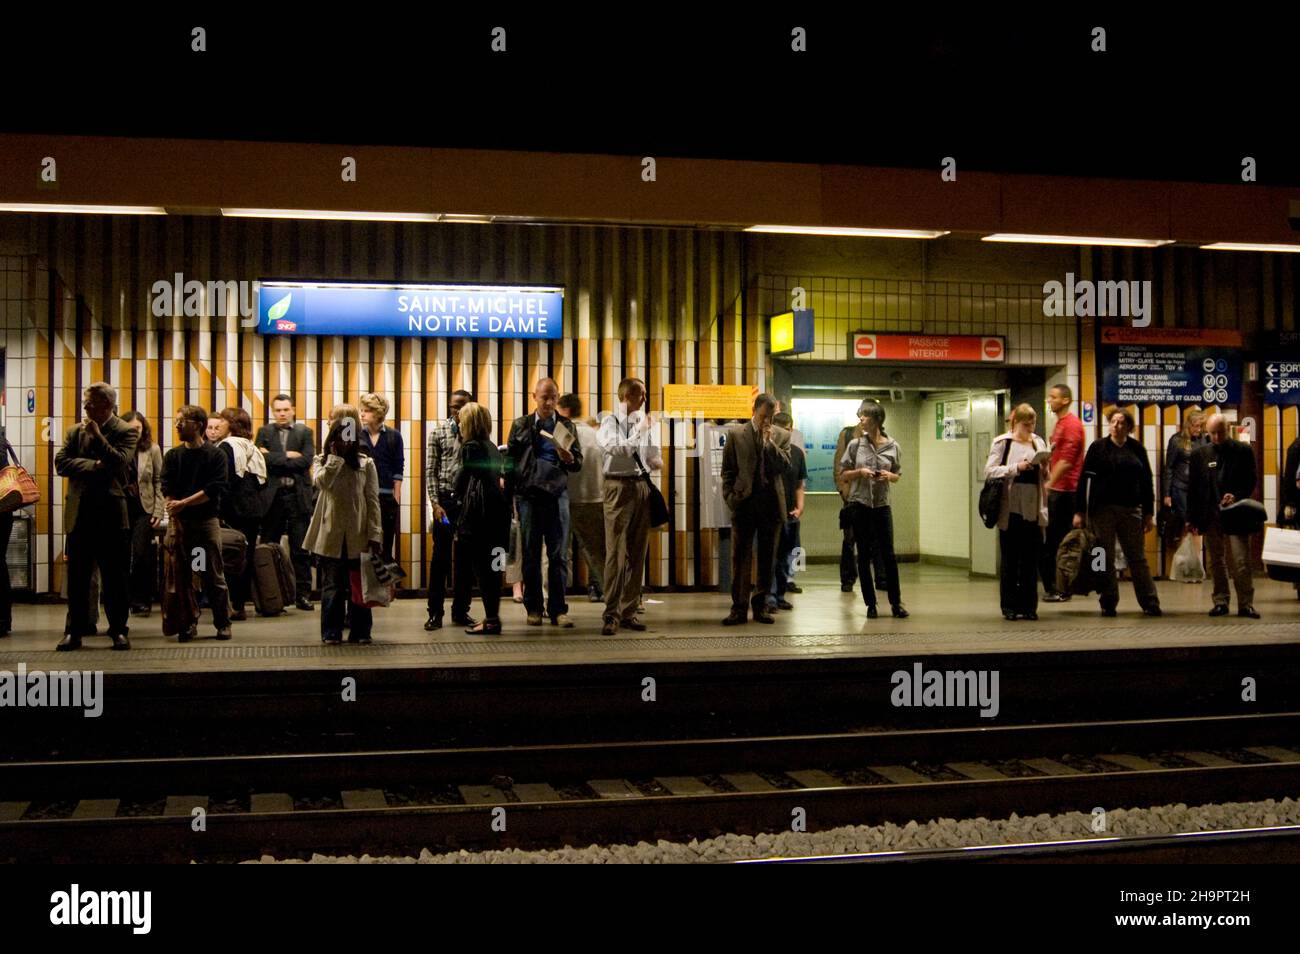 Passagiere, die auf einem U-Bahnsteig im Bahnhof Saint Michel Notre Dame in Paris in Frankreich warten Stockfoto